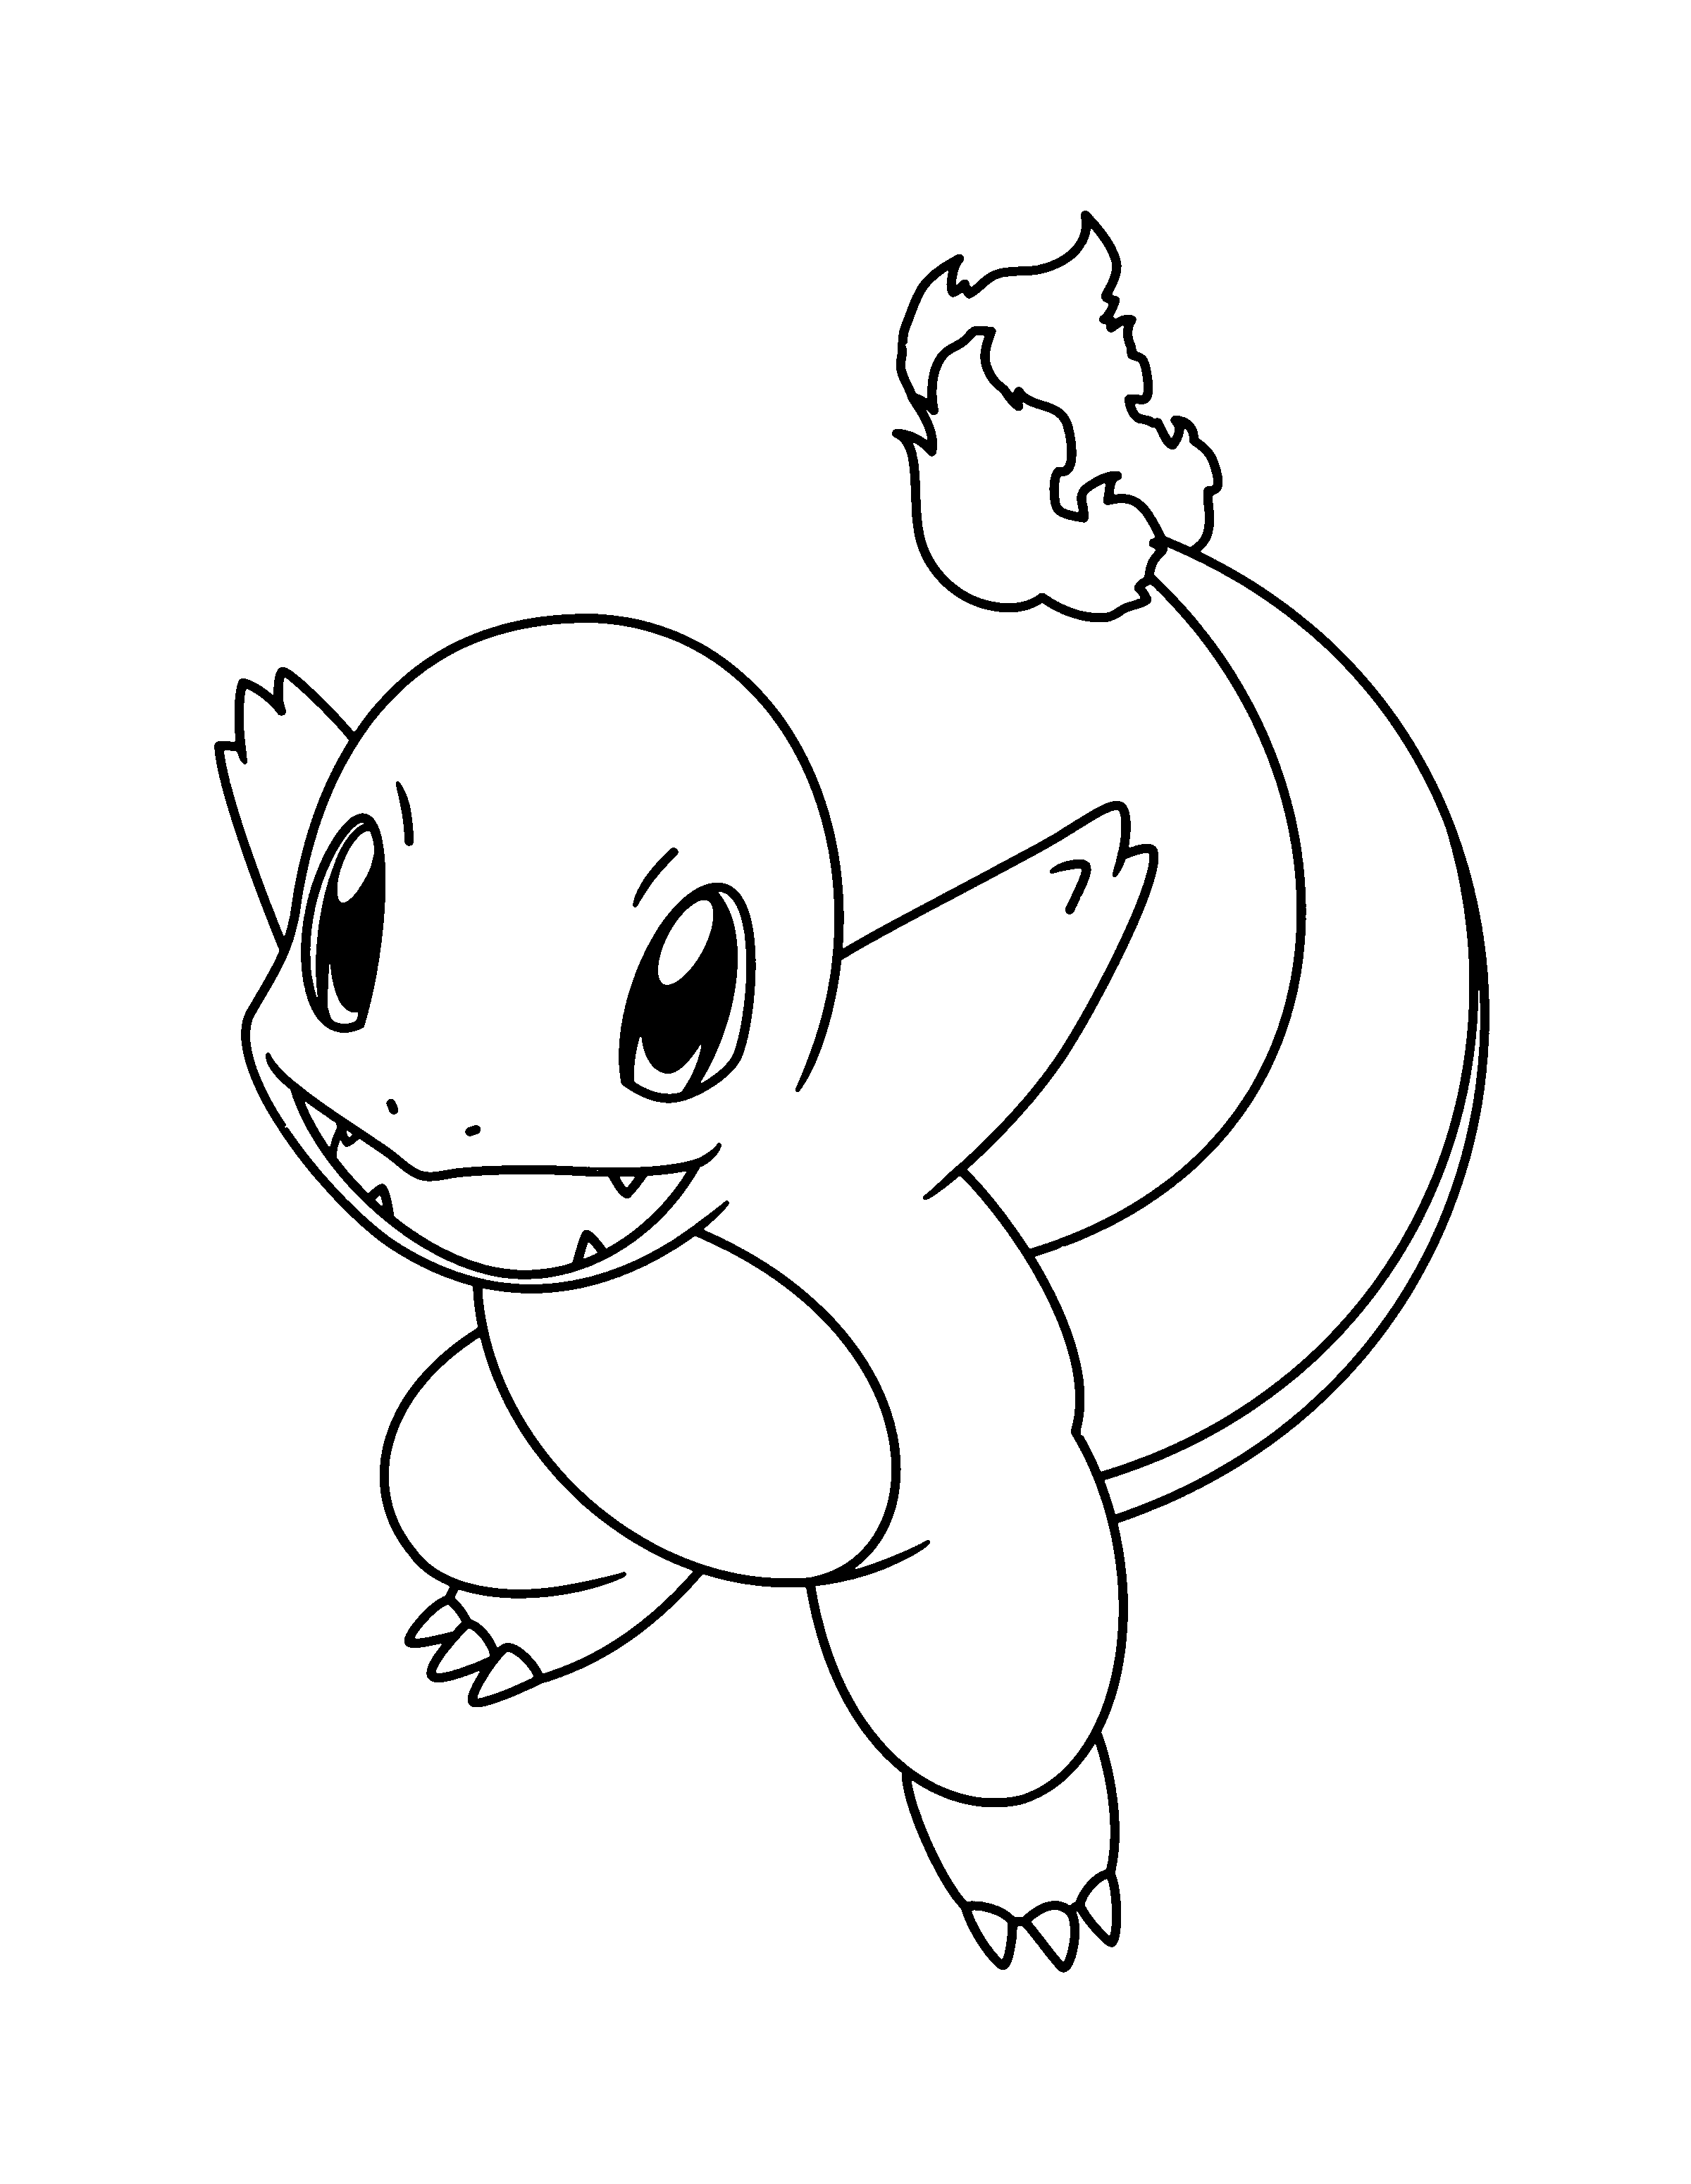 dibujo-para-colorear-pokemon-imagen-animada-1018